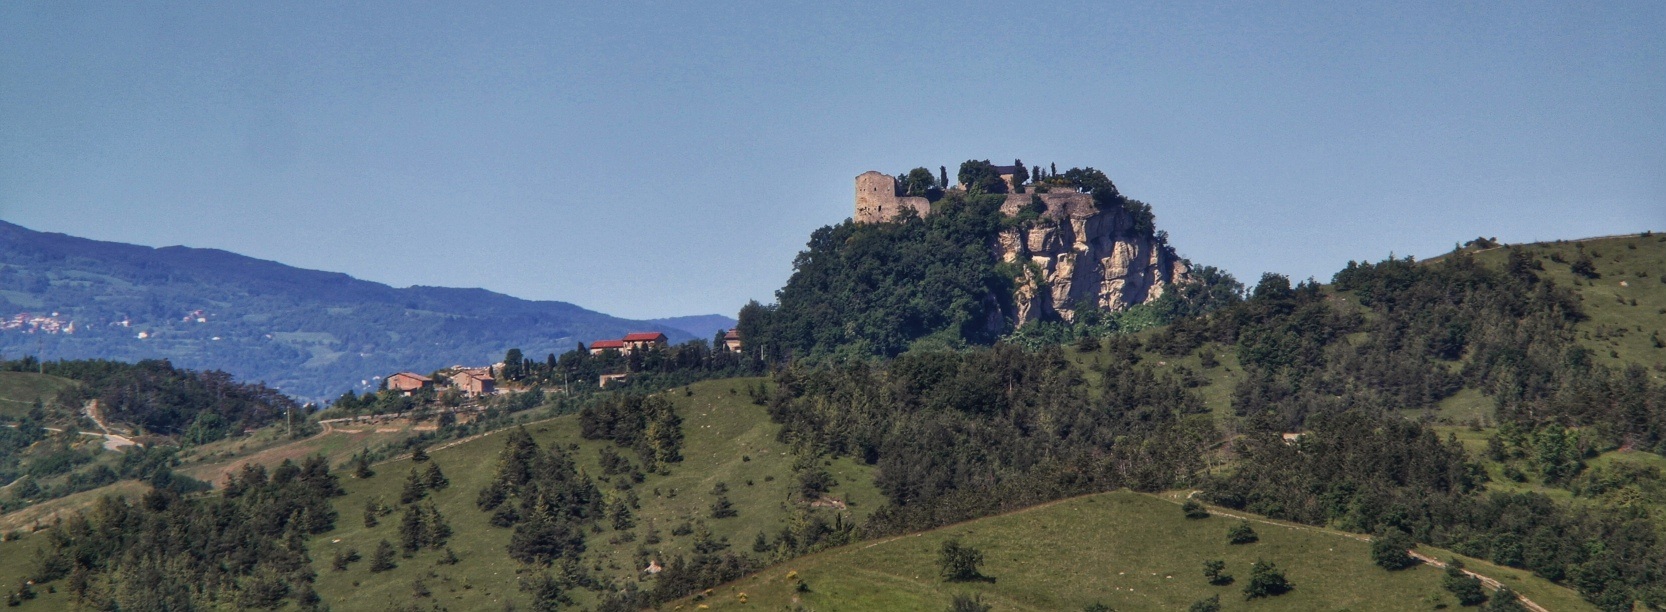 Tappa N.4 : da Reggio Emilia al Castello di Canossa (26.7 KM)